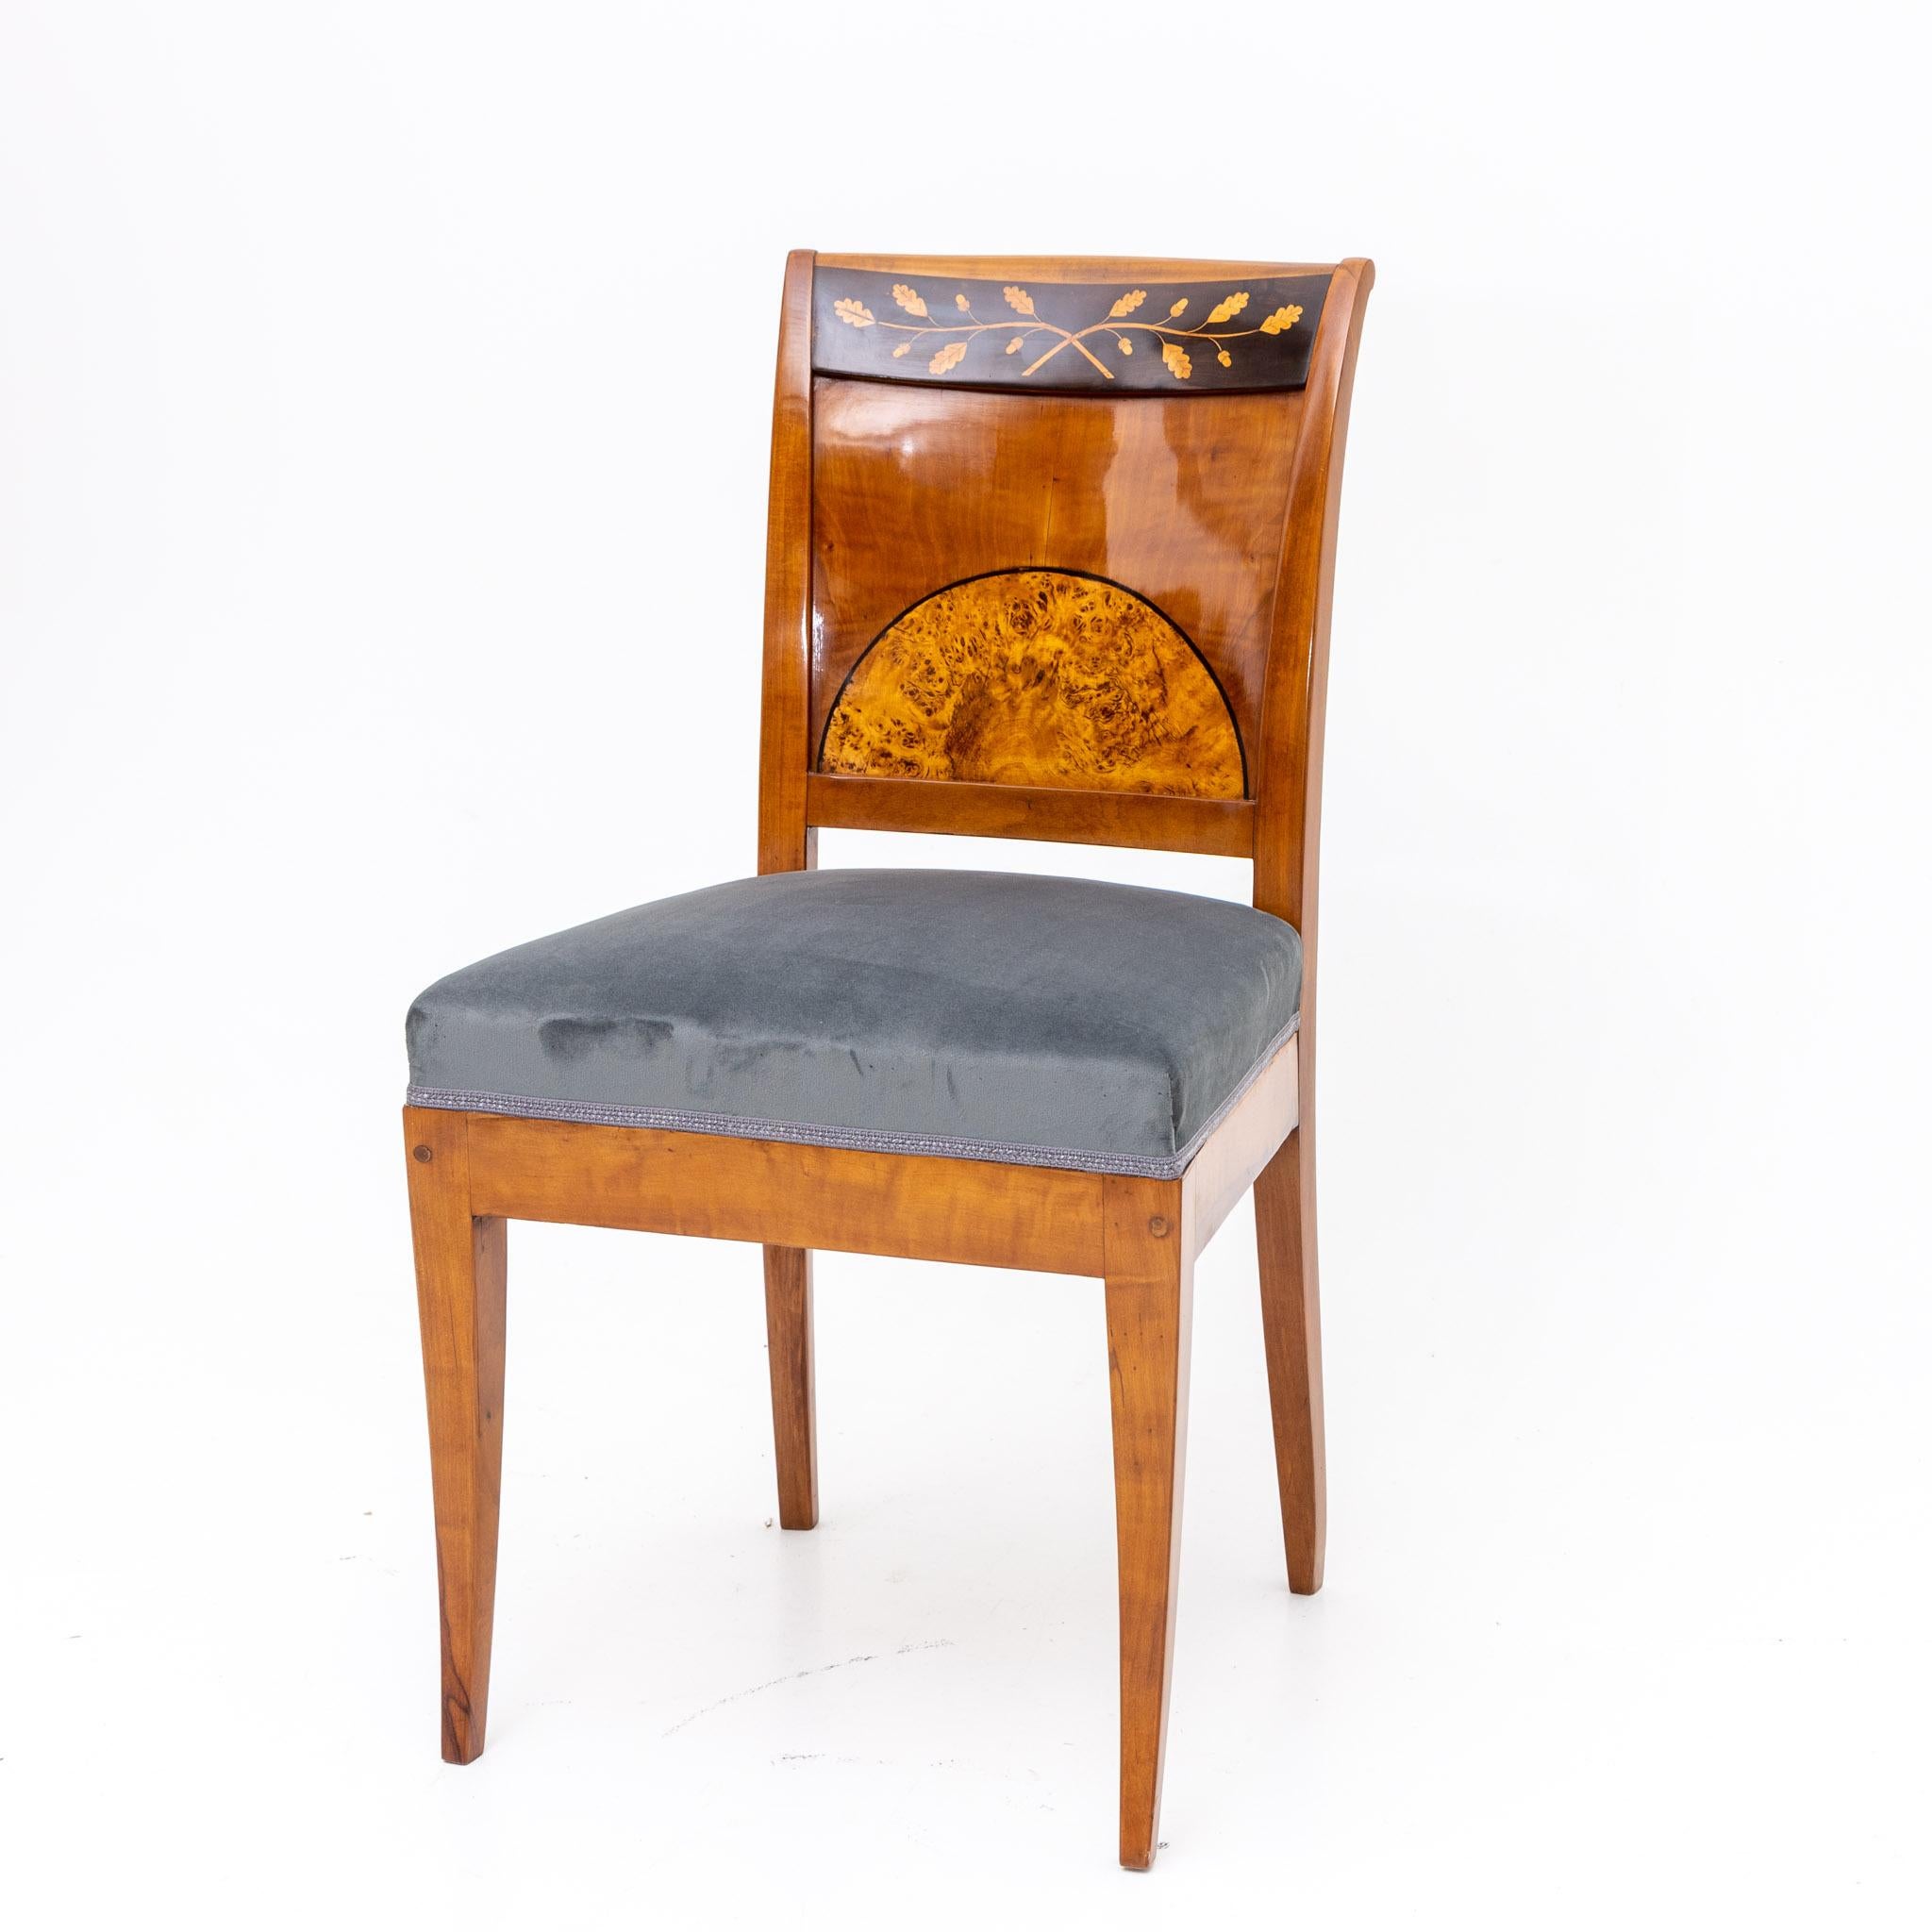 Wood Biedermeier Chairs, Central German circa 1820